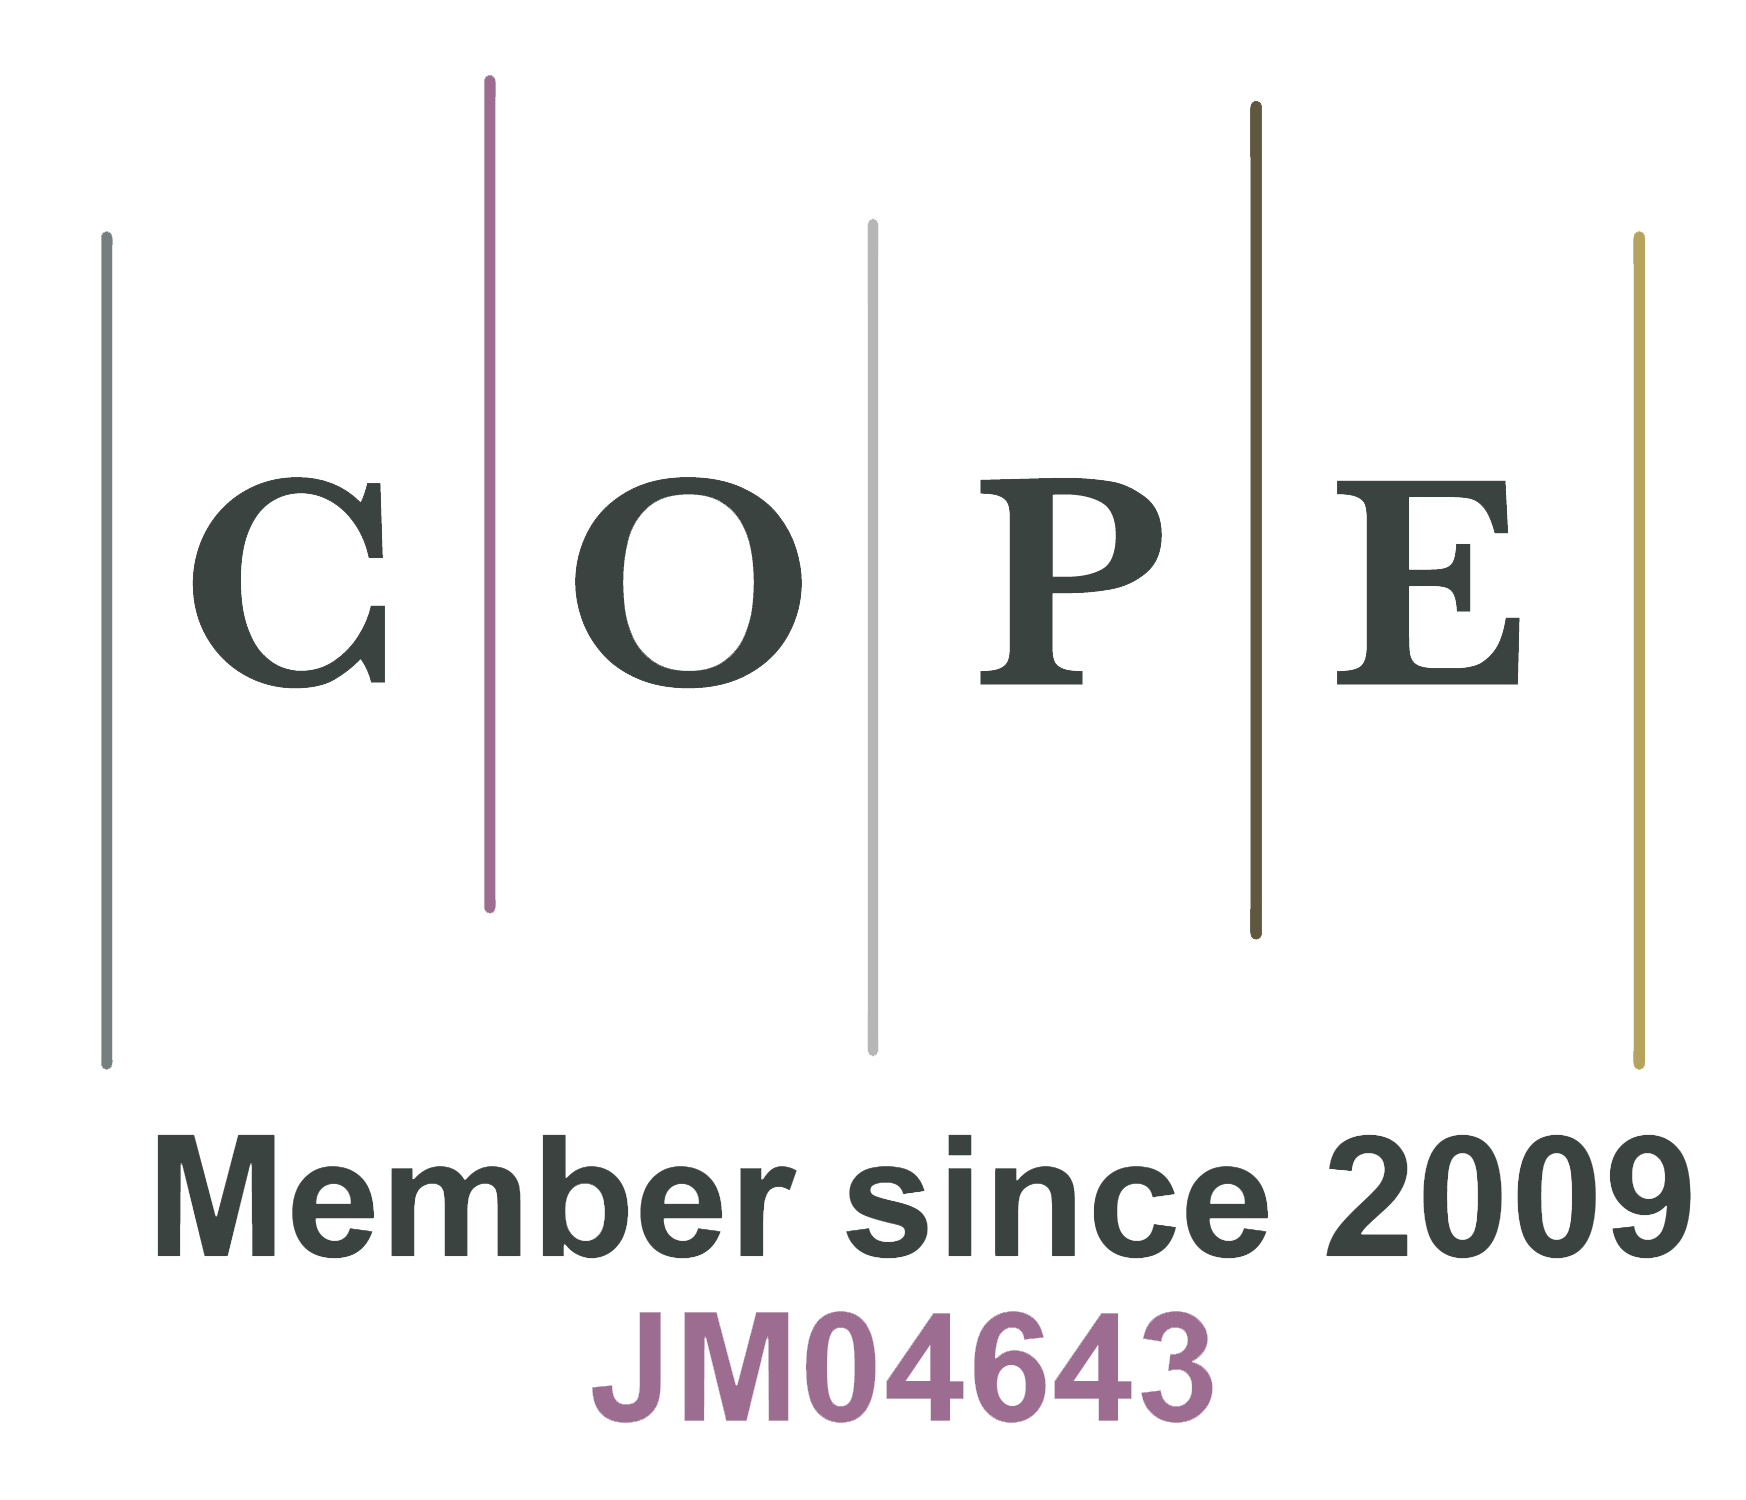 自2009年起为COPE成员